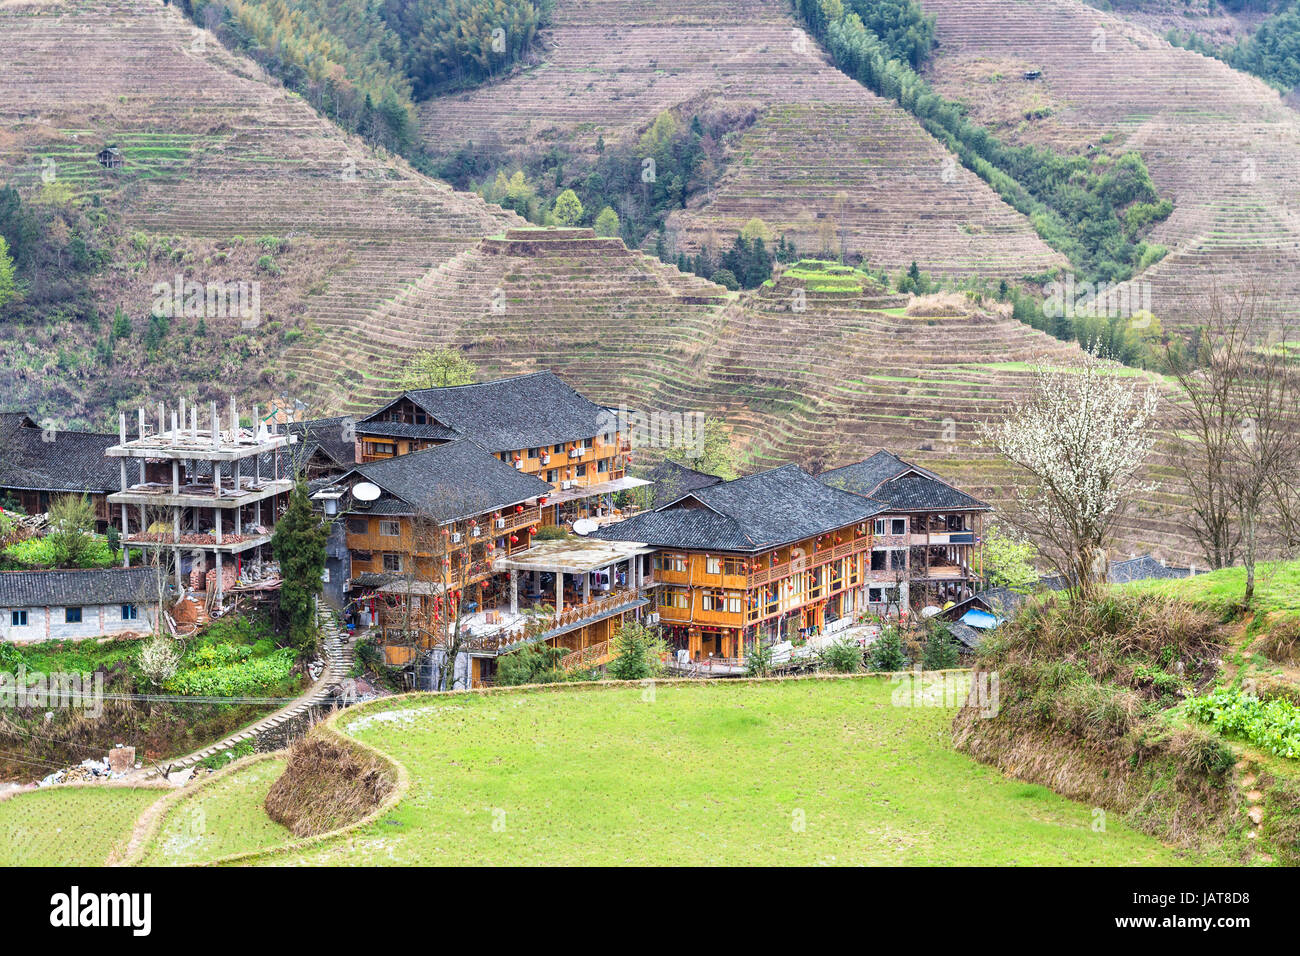 Reisen Sie nach China - Blick auf Häuser im Dorf zwischen terrassierten Hügeln von Dazhai Longsheng Reisterrassen (Dragon es Rückgrat Terrasse, Longji Reisterrassen) Stockfoto